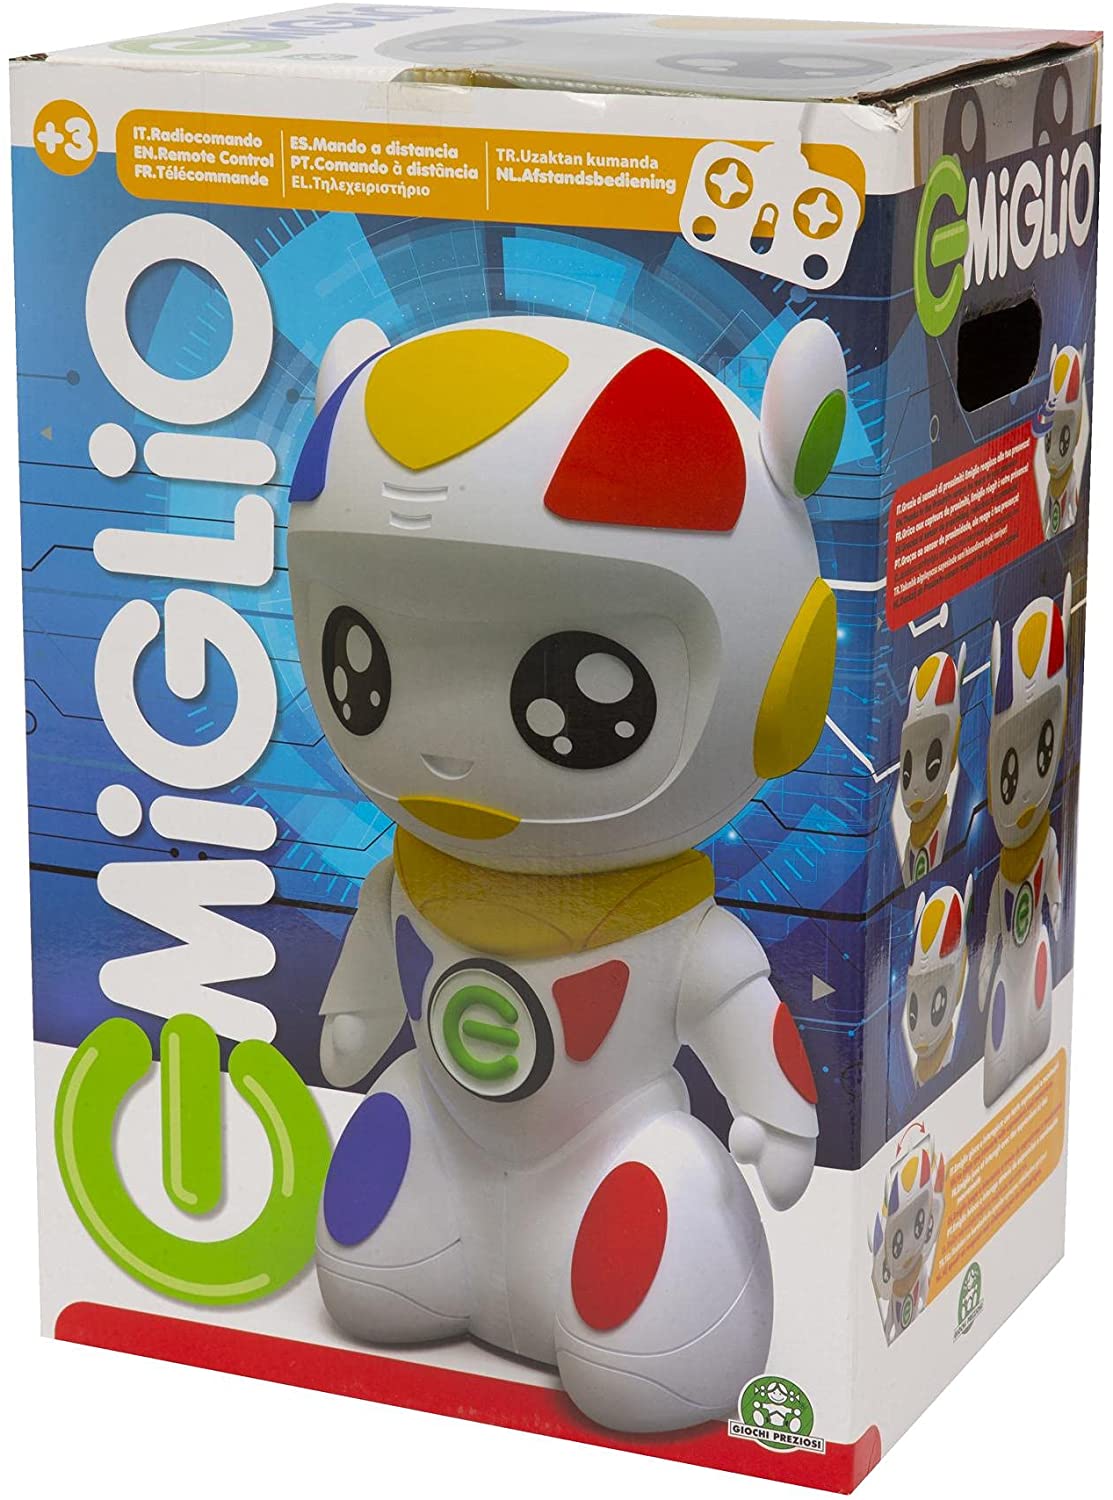 Emiglio Robot - Giochi preziosi -MGL00000 - Il Giocartolaio